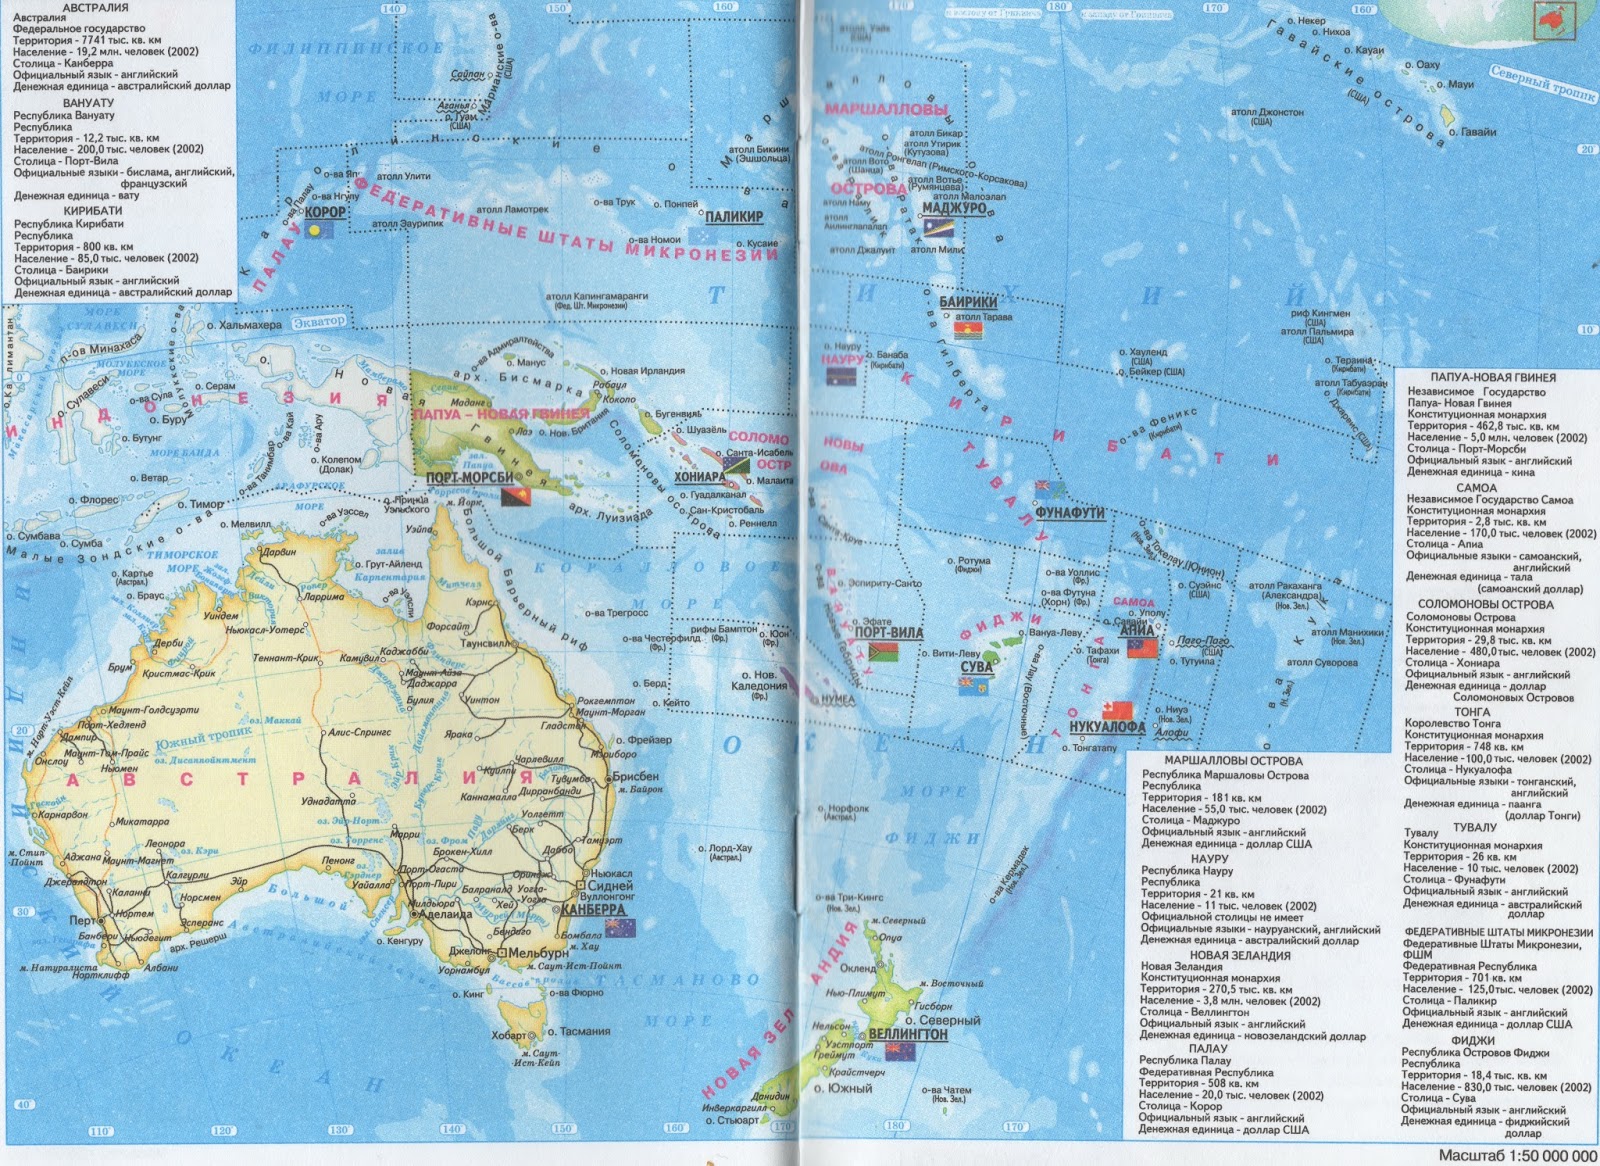 Австралия и океания территория. Политическая карта Австралии. Политическая карта Океании. Карта Австралии и Океании. Карта Австралия и Океания политическая карта.